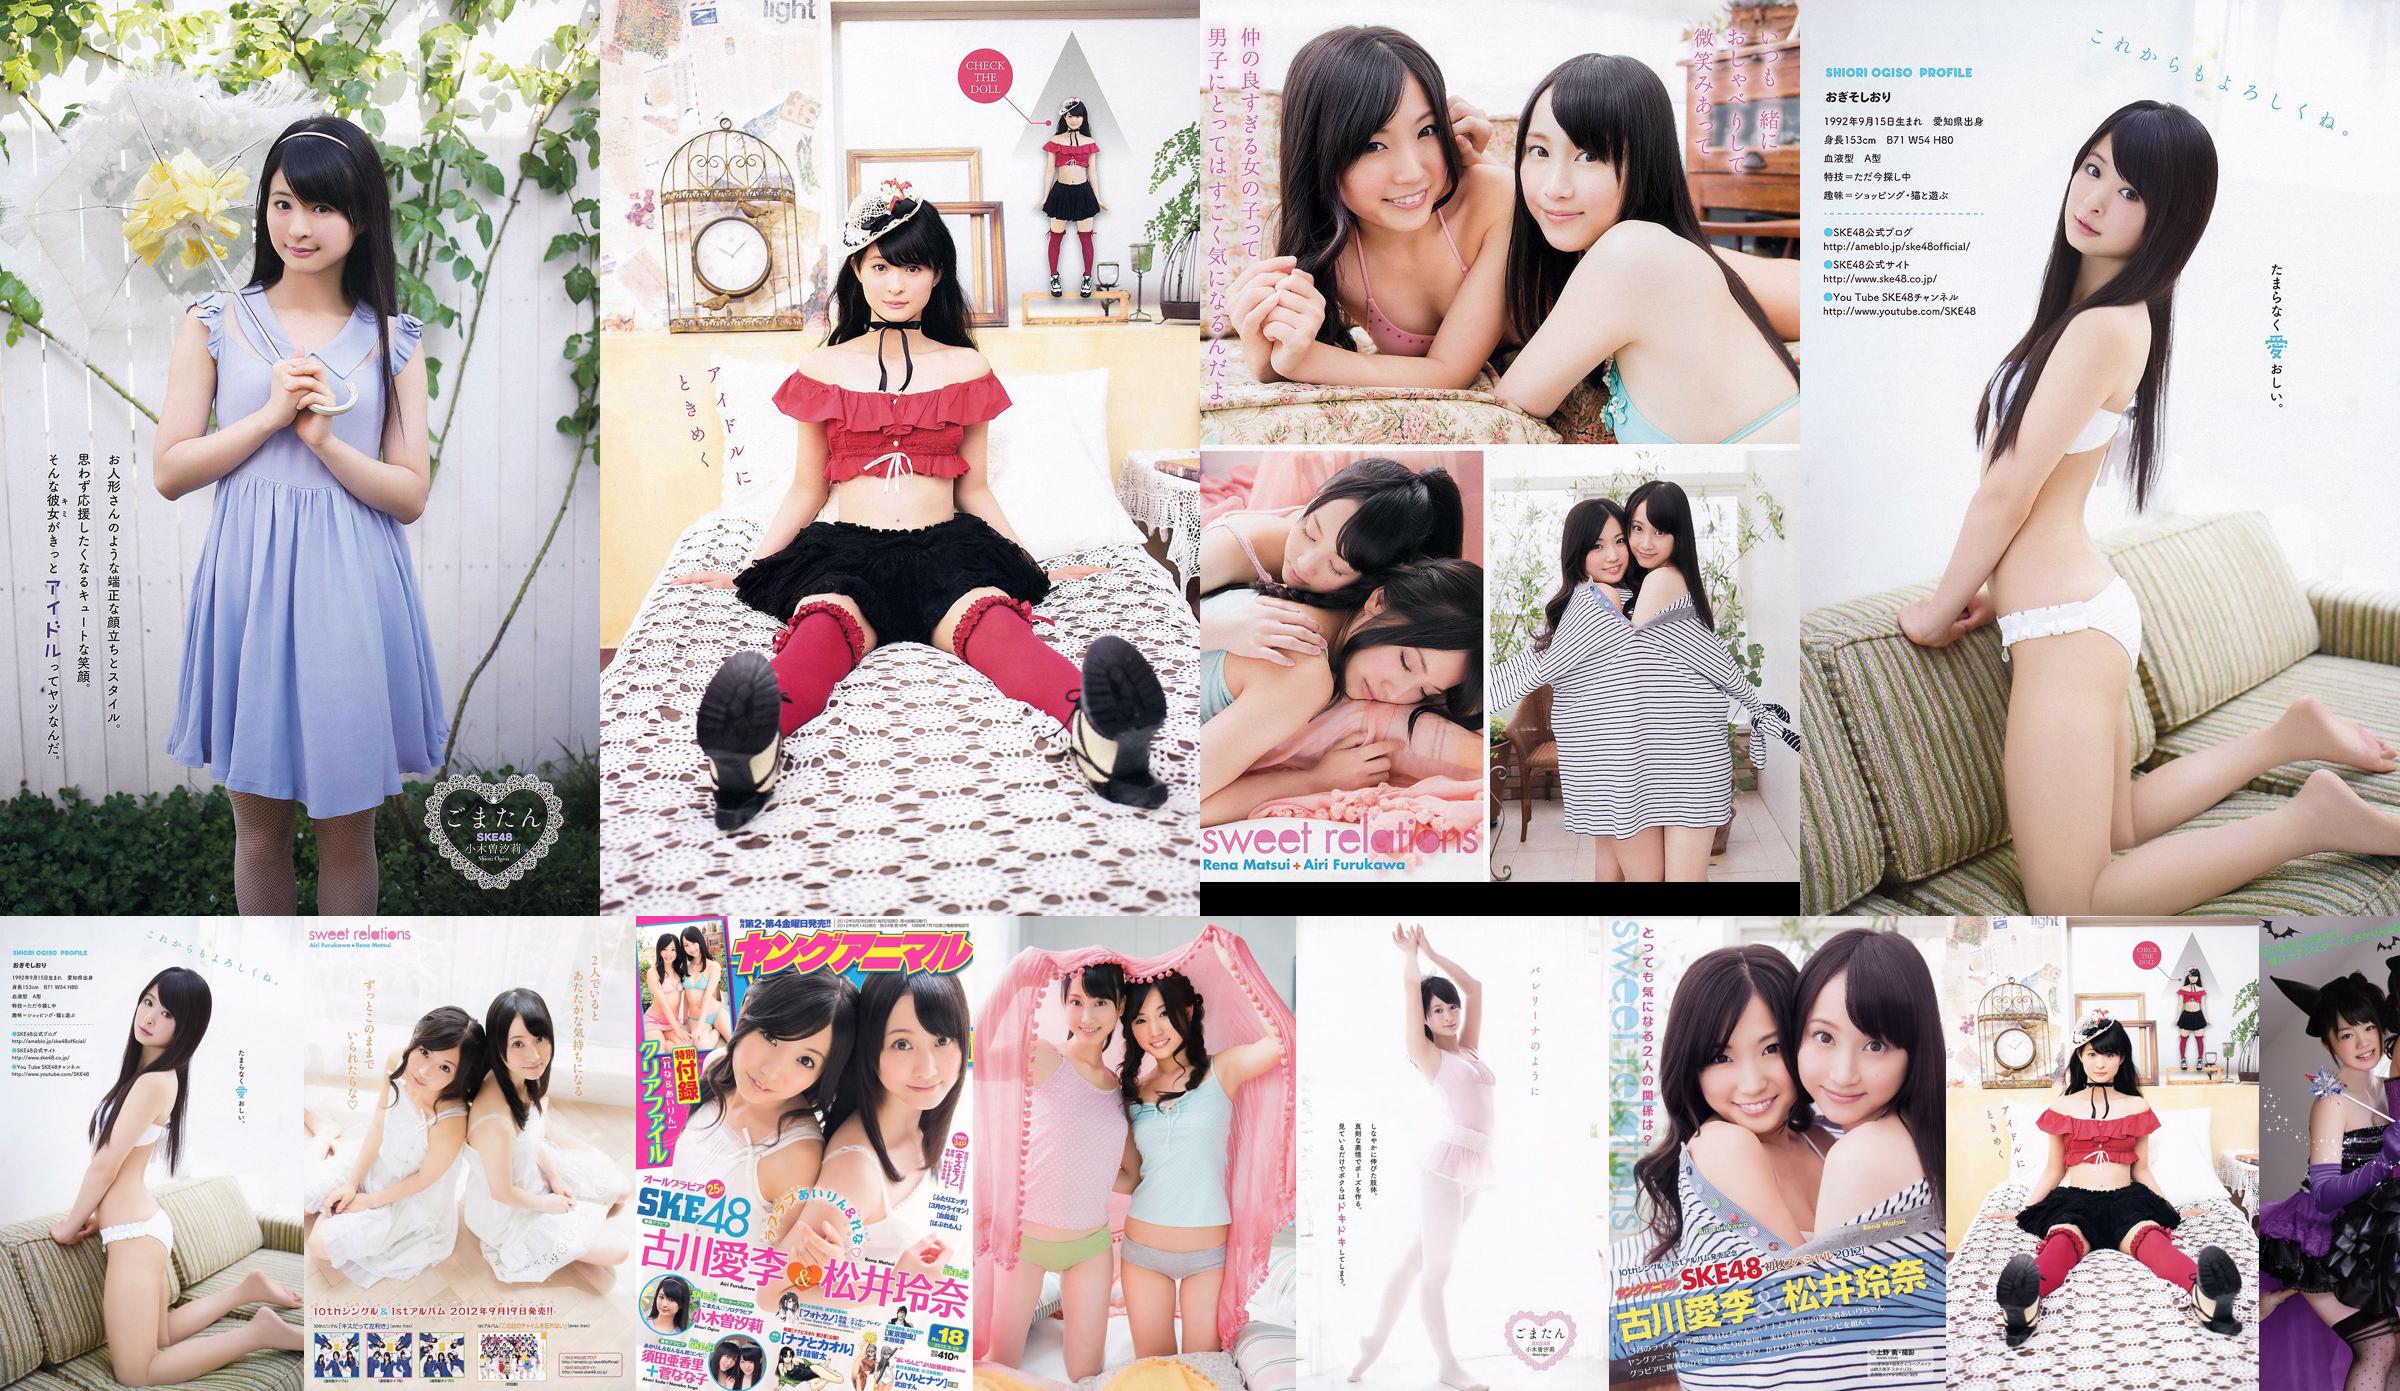 Ai Li Furukawa, Rena Matsui, Sasa Ogi, Aikari Suda [Young Animal] 2012 No.18 Photo Magazine No.192f9b Page 13